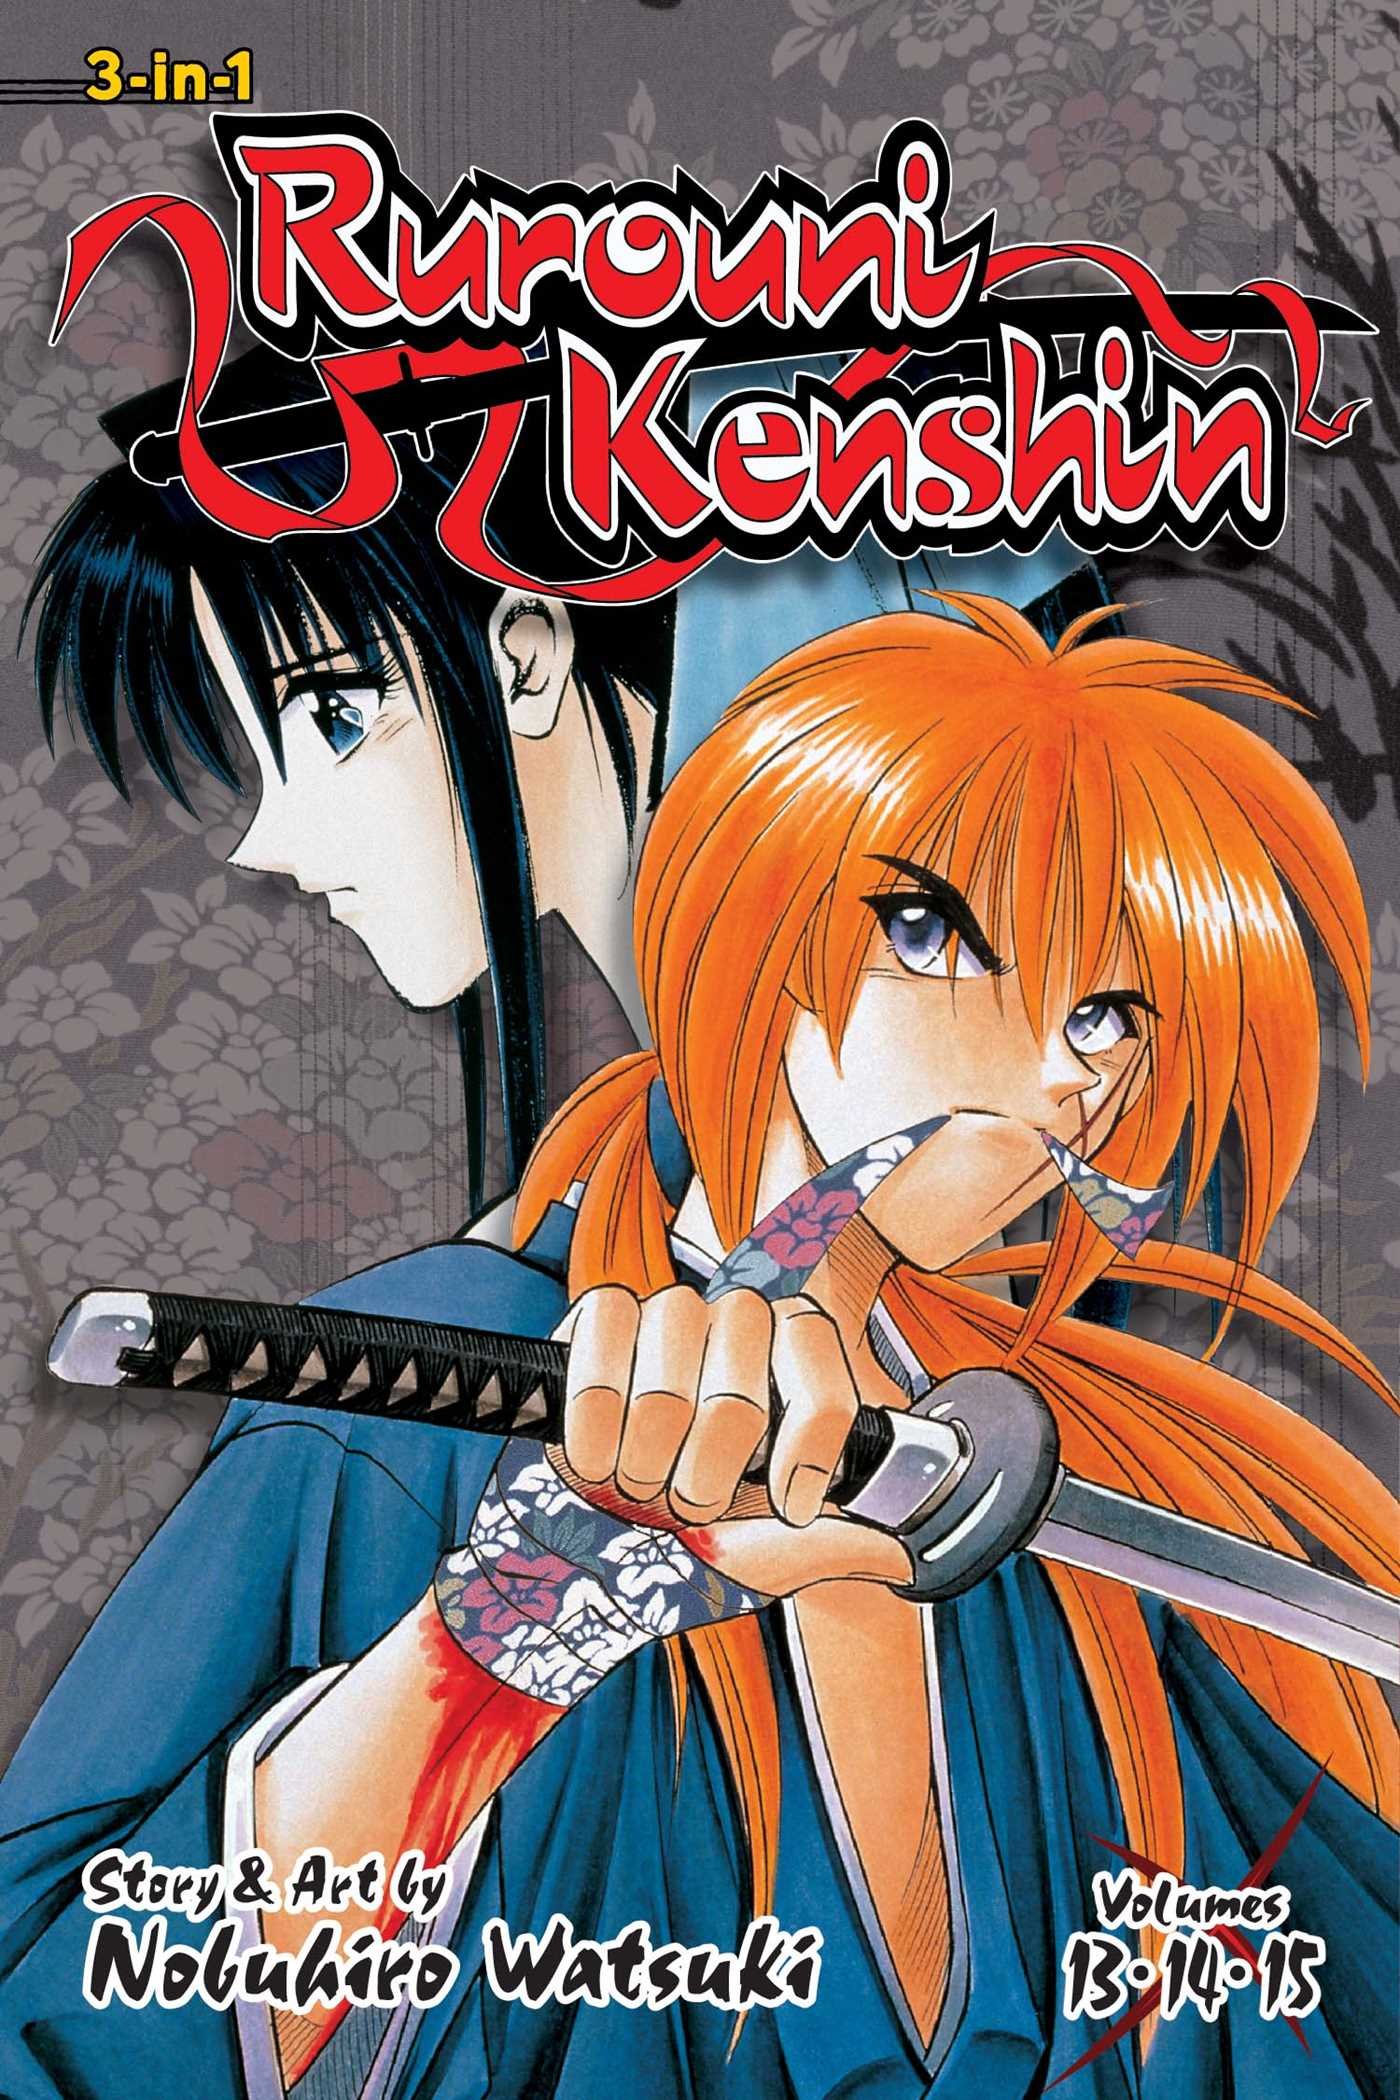 Rurouni Kenshin - Volume 13,14 & 15 (3-in-1 Edition) | Nobuhiro Watsuki